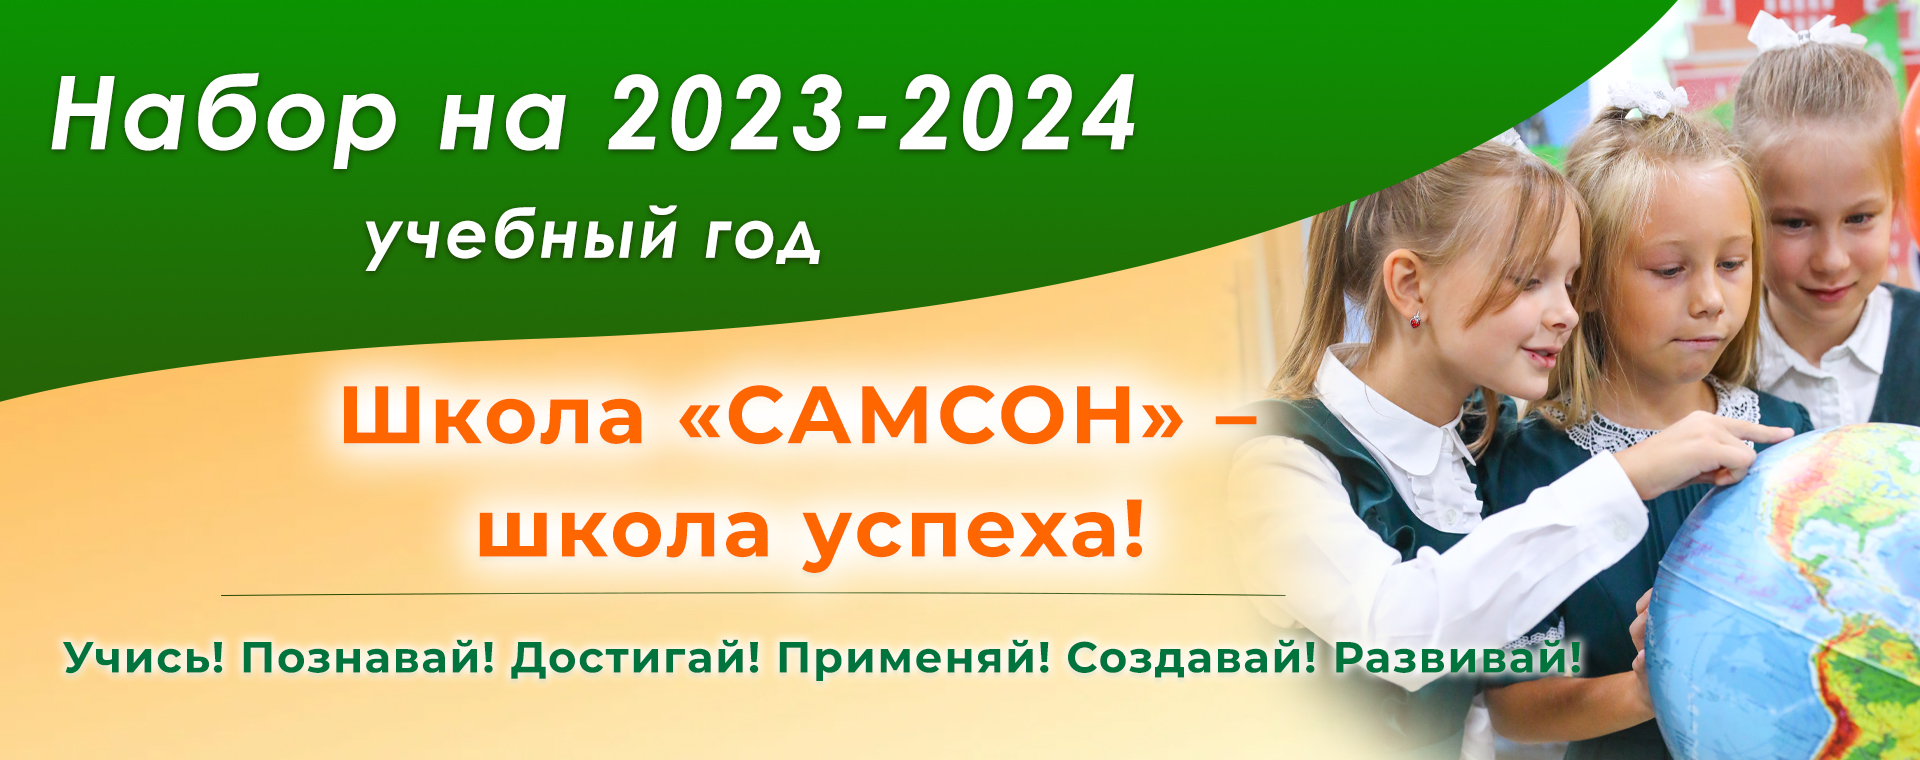 Частная школа «САМСОН» - Набор в школу на 2023/2024 год с 1 февраля!